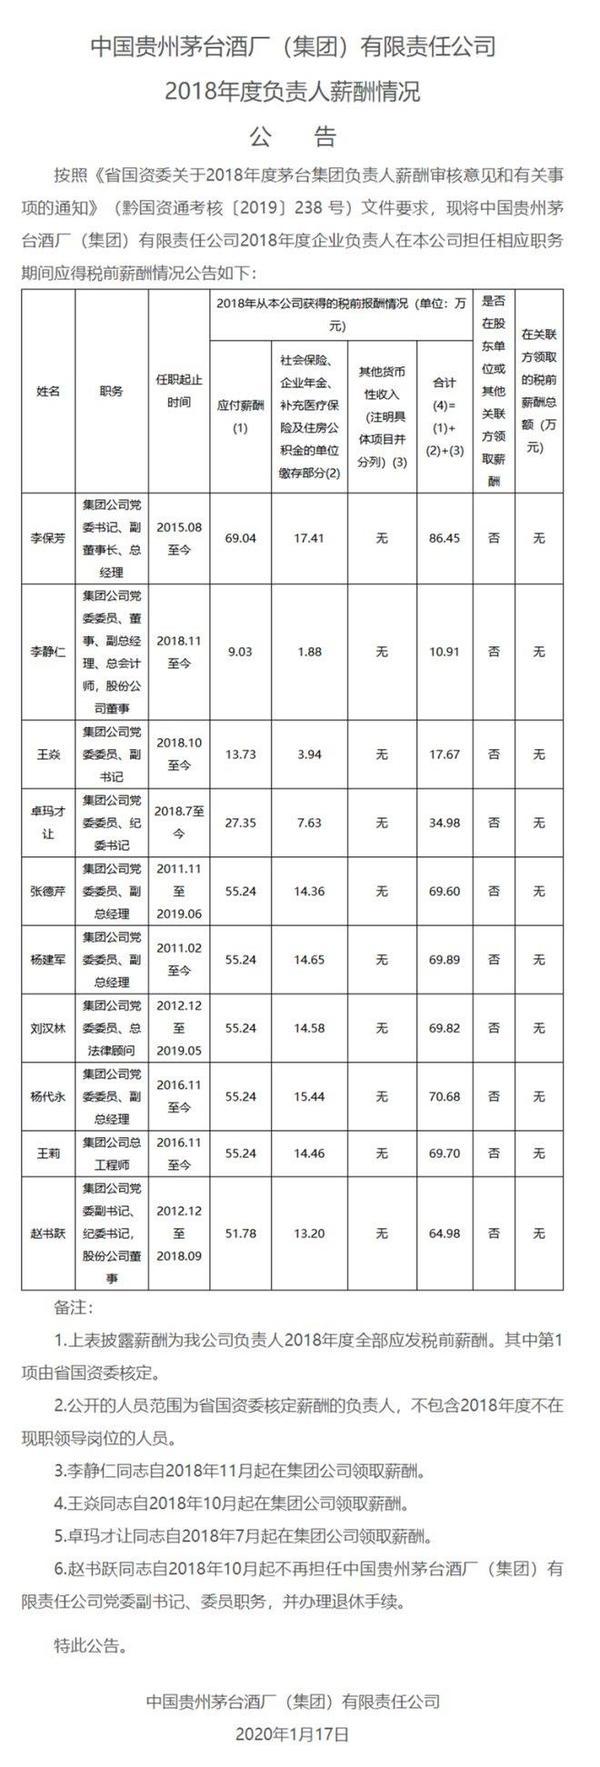 茅台集团公示高层年薪 李保芳2018年税前86.45万